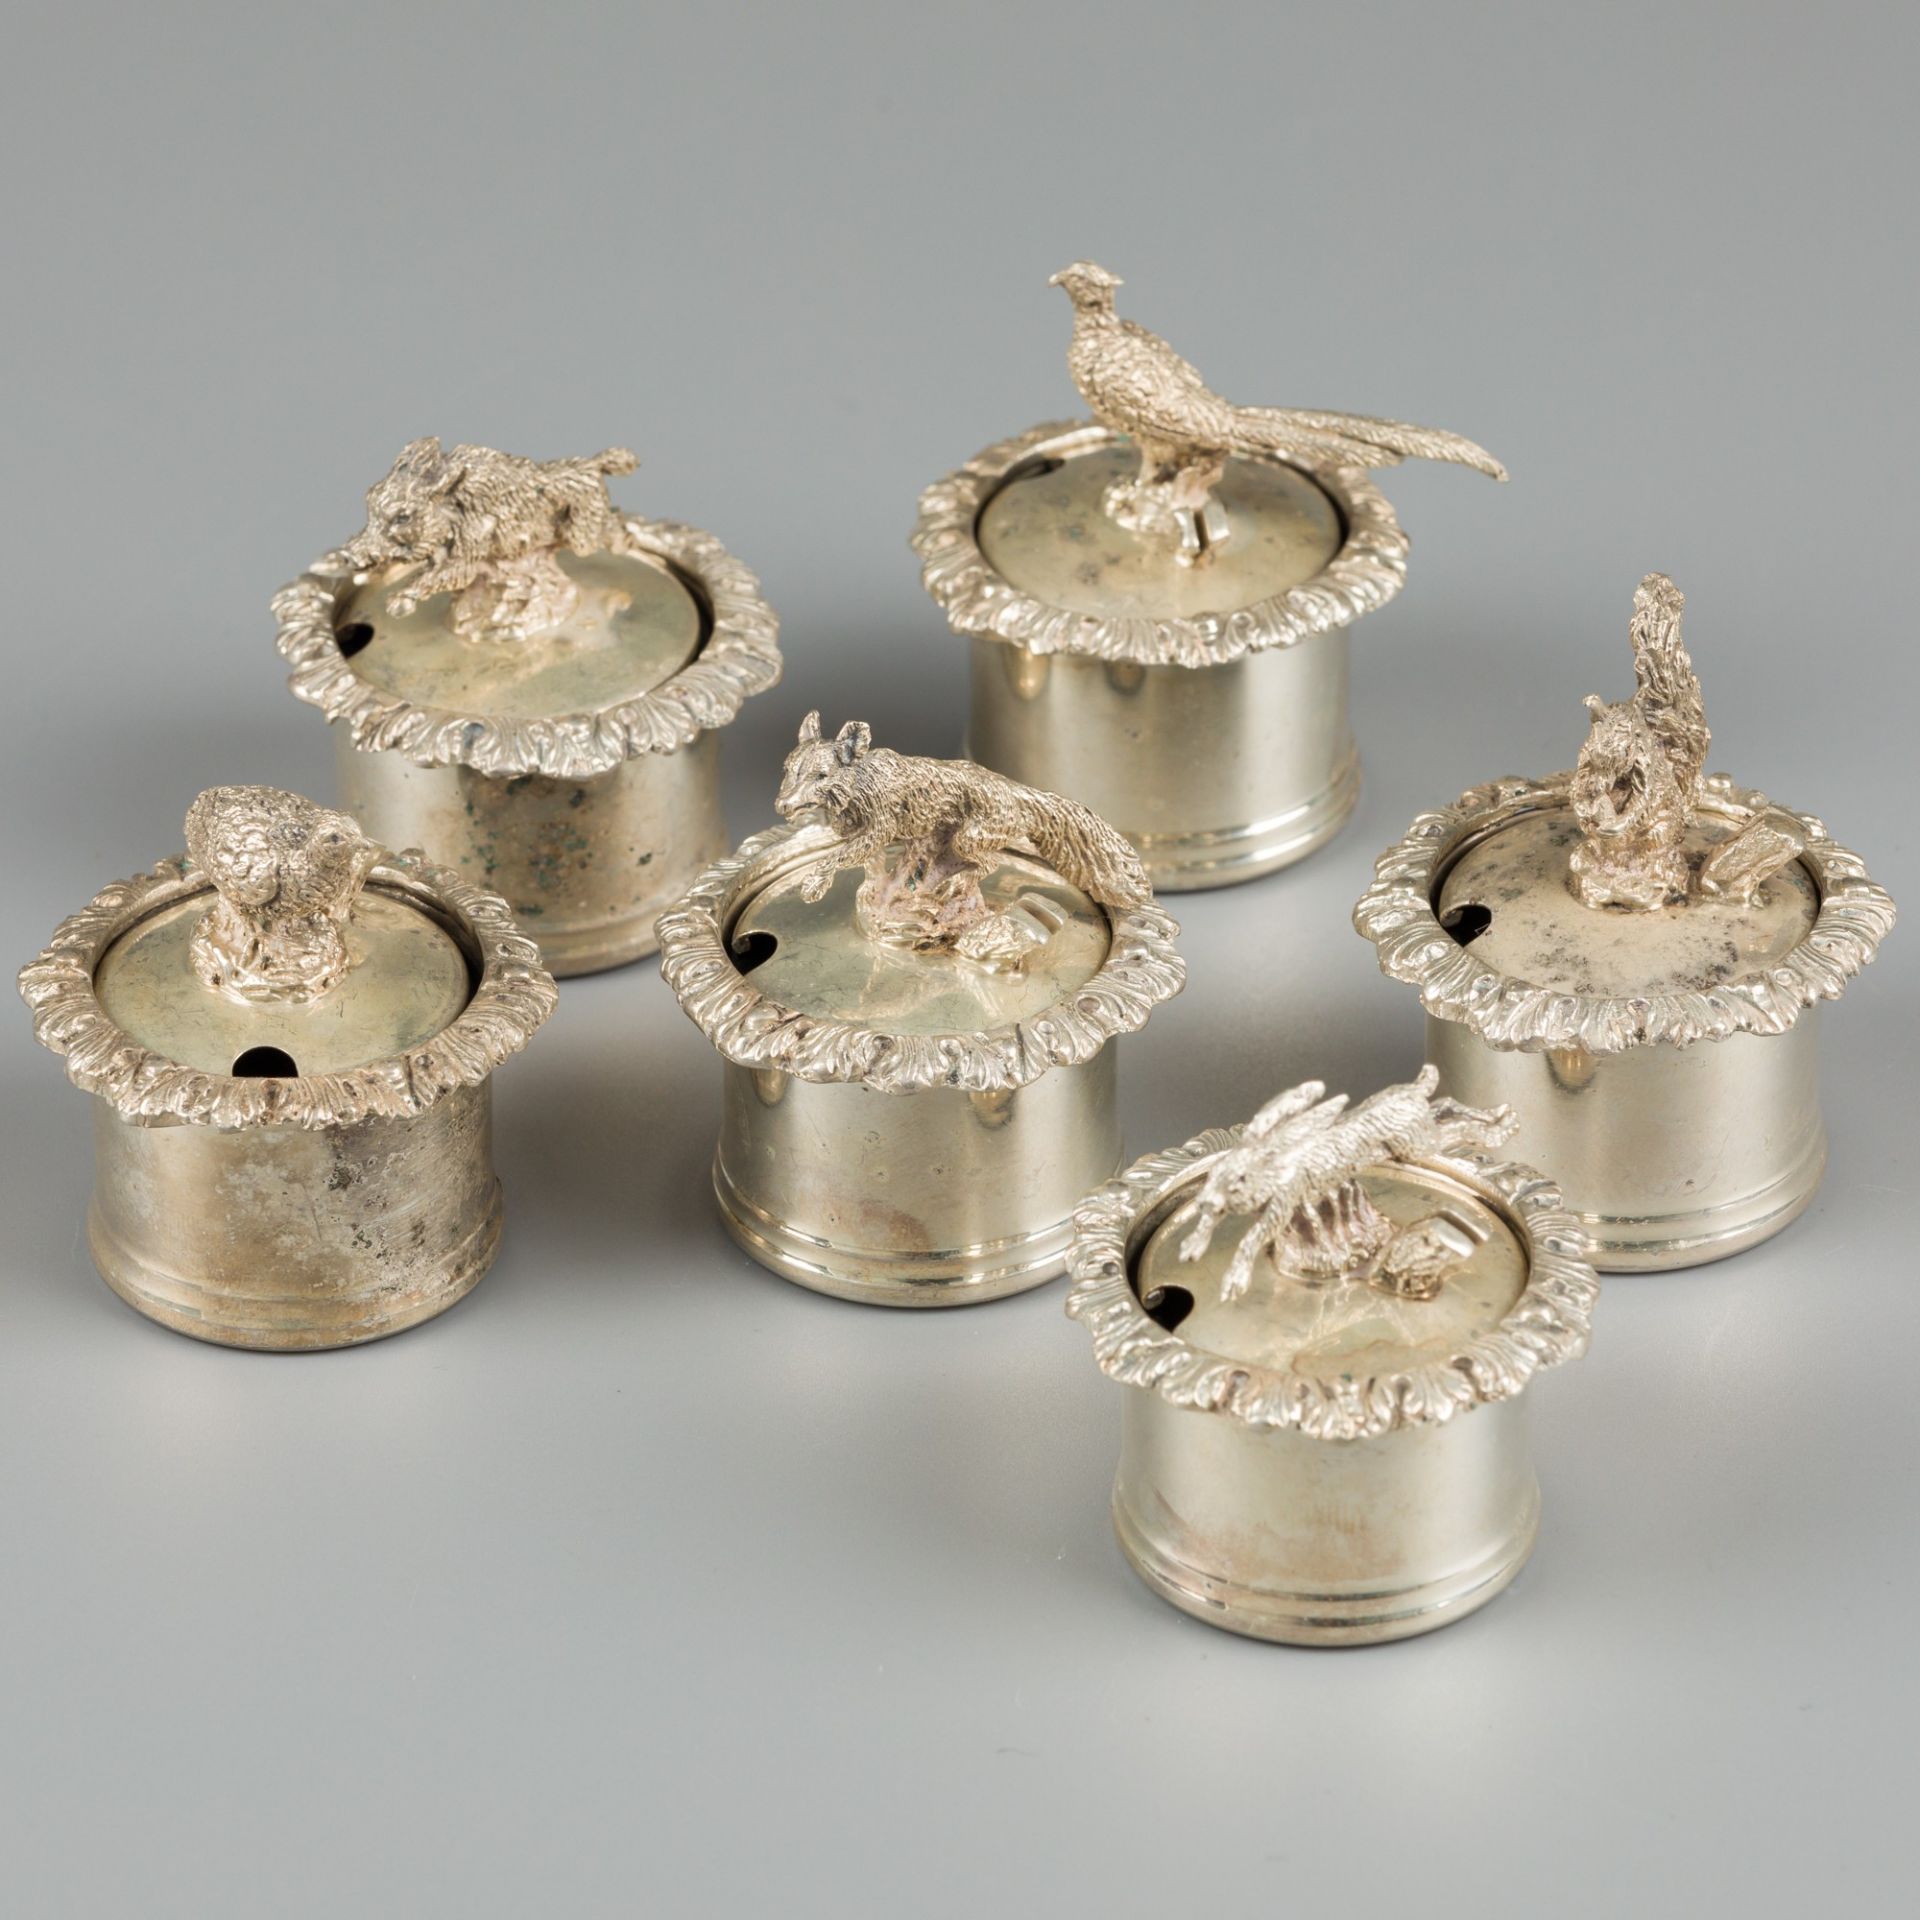 6-piece set of salt cellars with cardholder lid, silver.